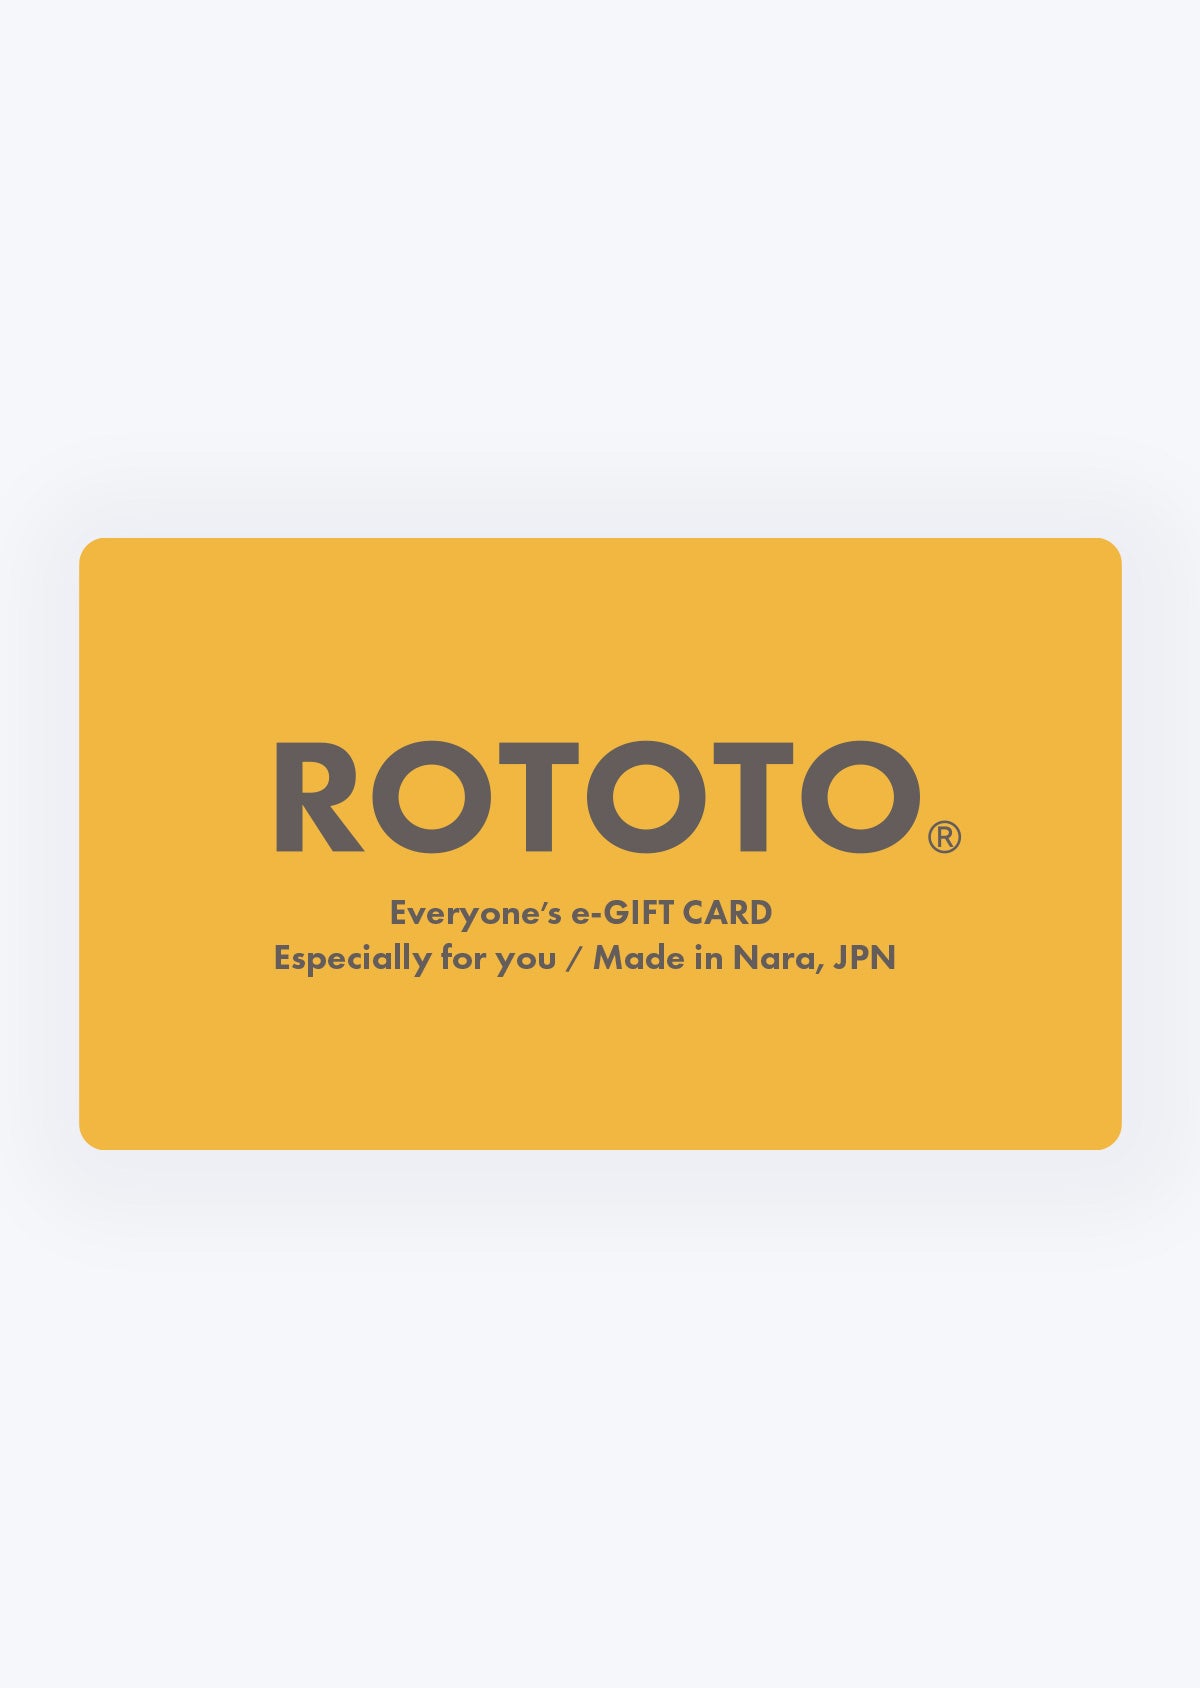 ROTOTO e-GIFT CARD